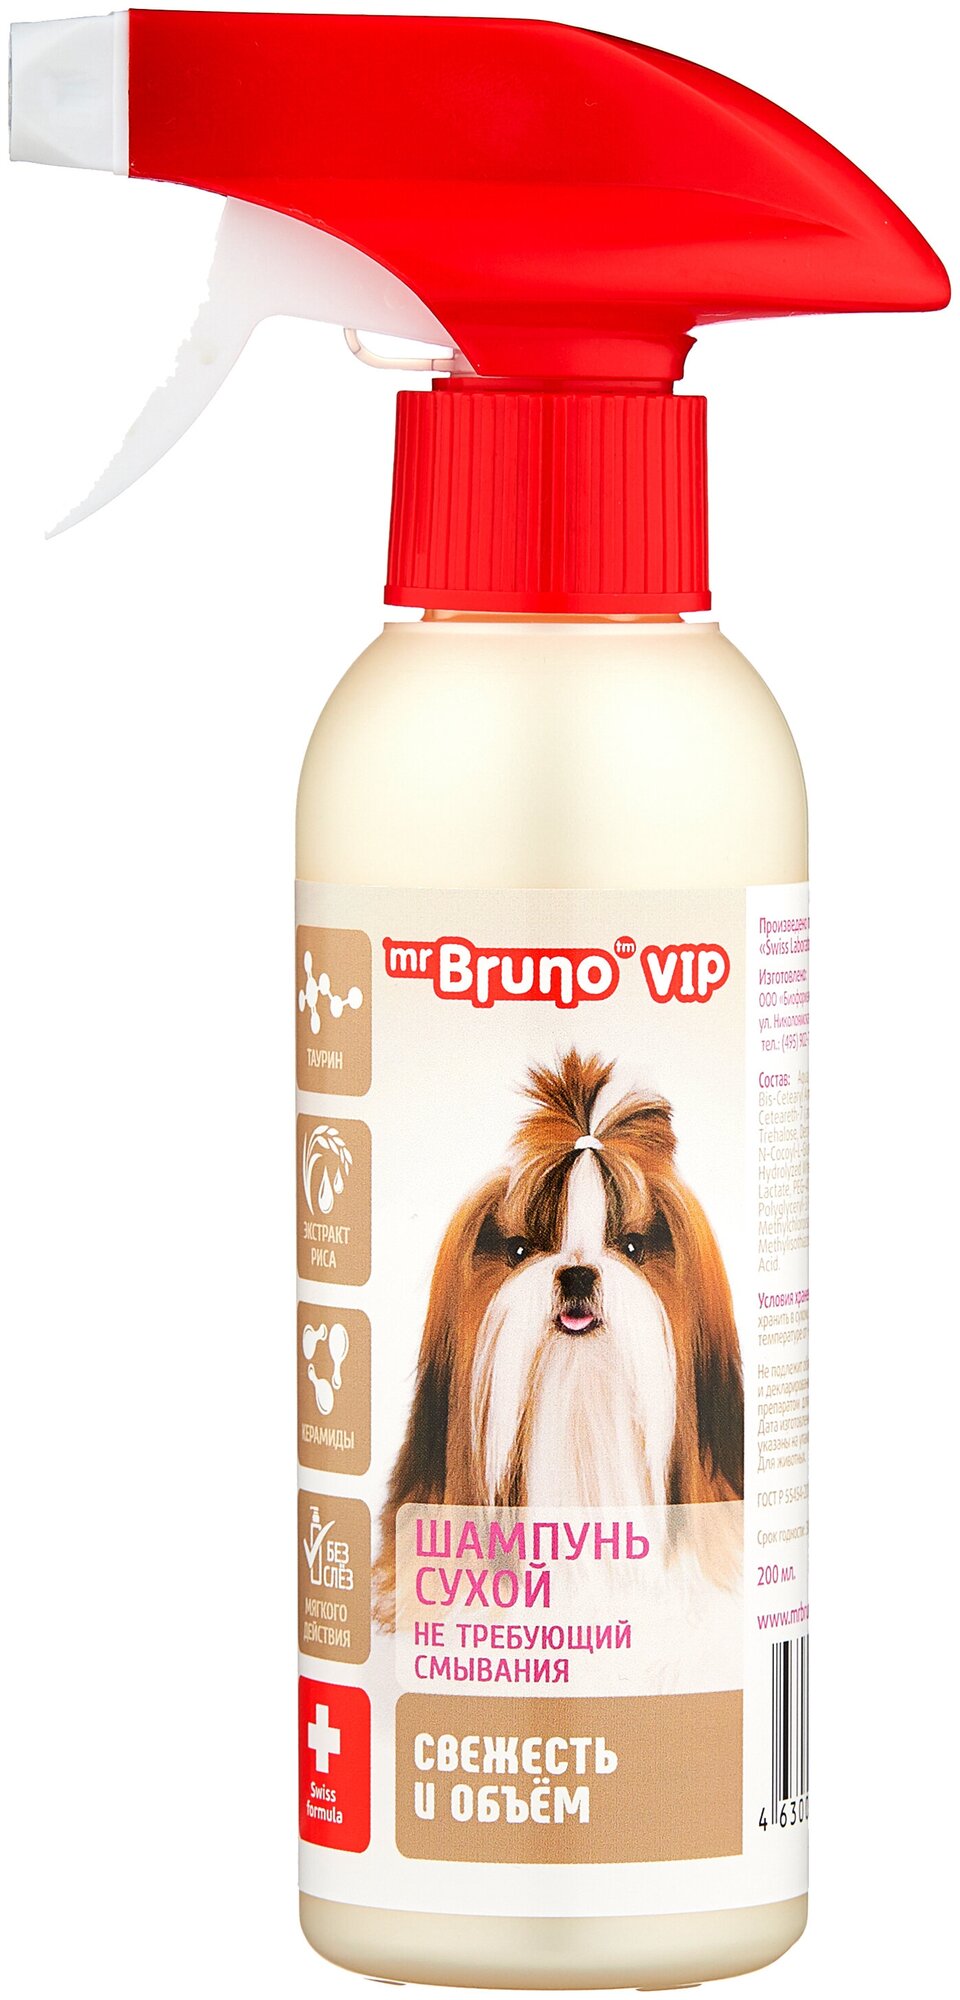 Сухой шампунь Mr.Bruno VIP сухой с экстрактом риса для собак 200 мл